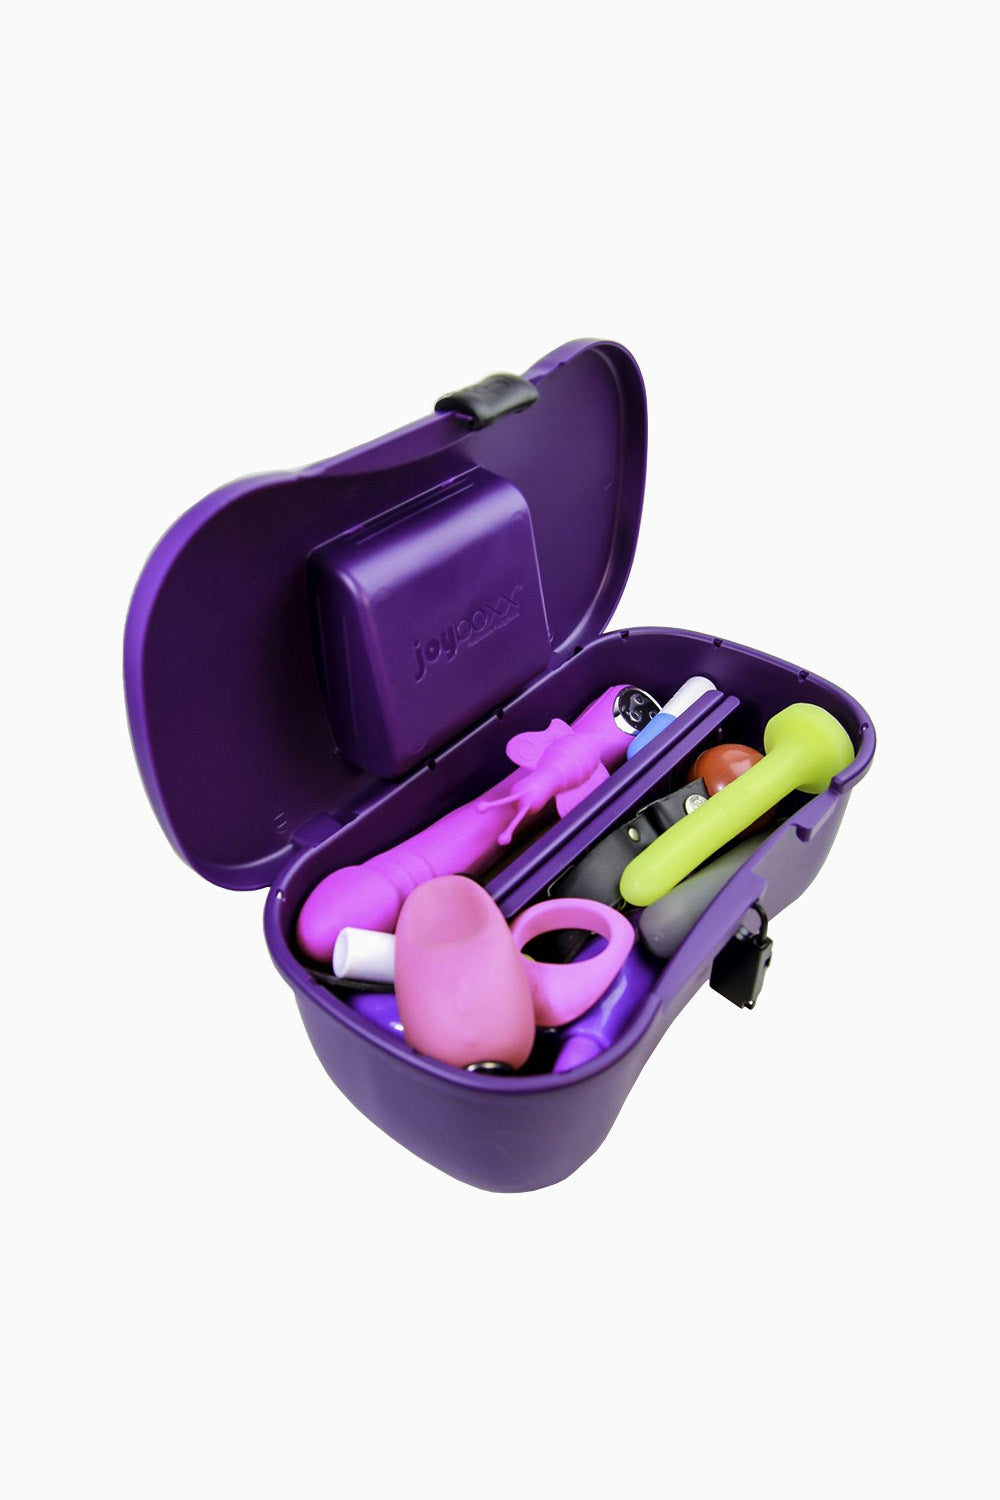 Joyboxx Hygienic Sex Toy Storage System Box - Purple